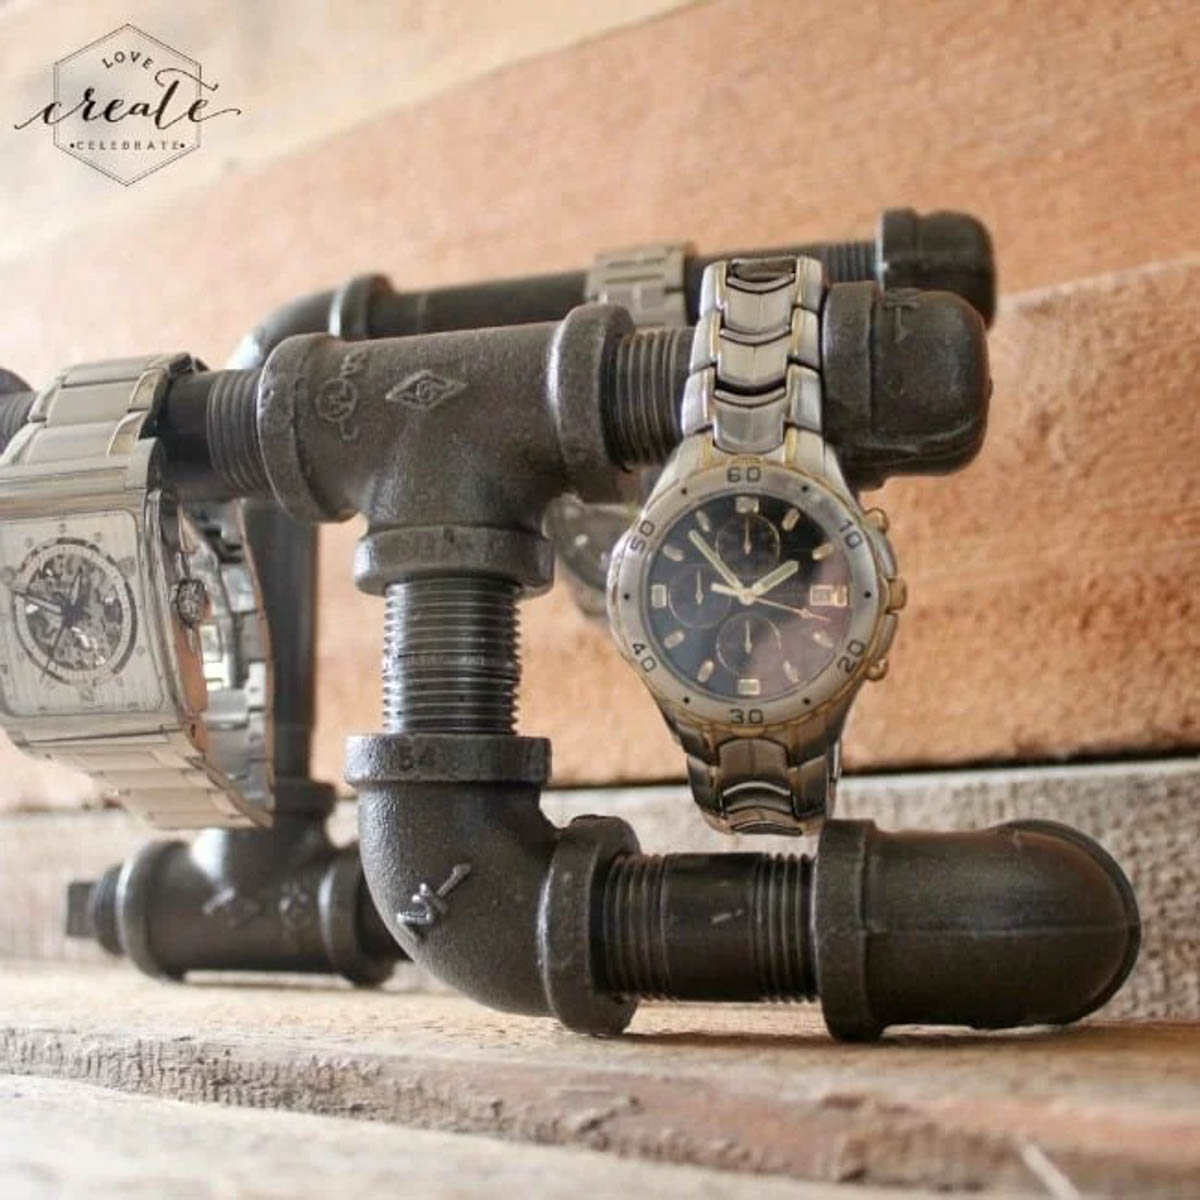 Industrial watch holder.